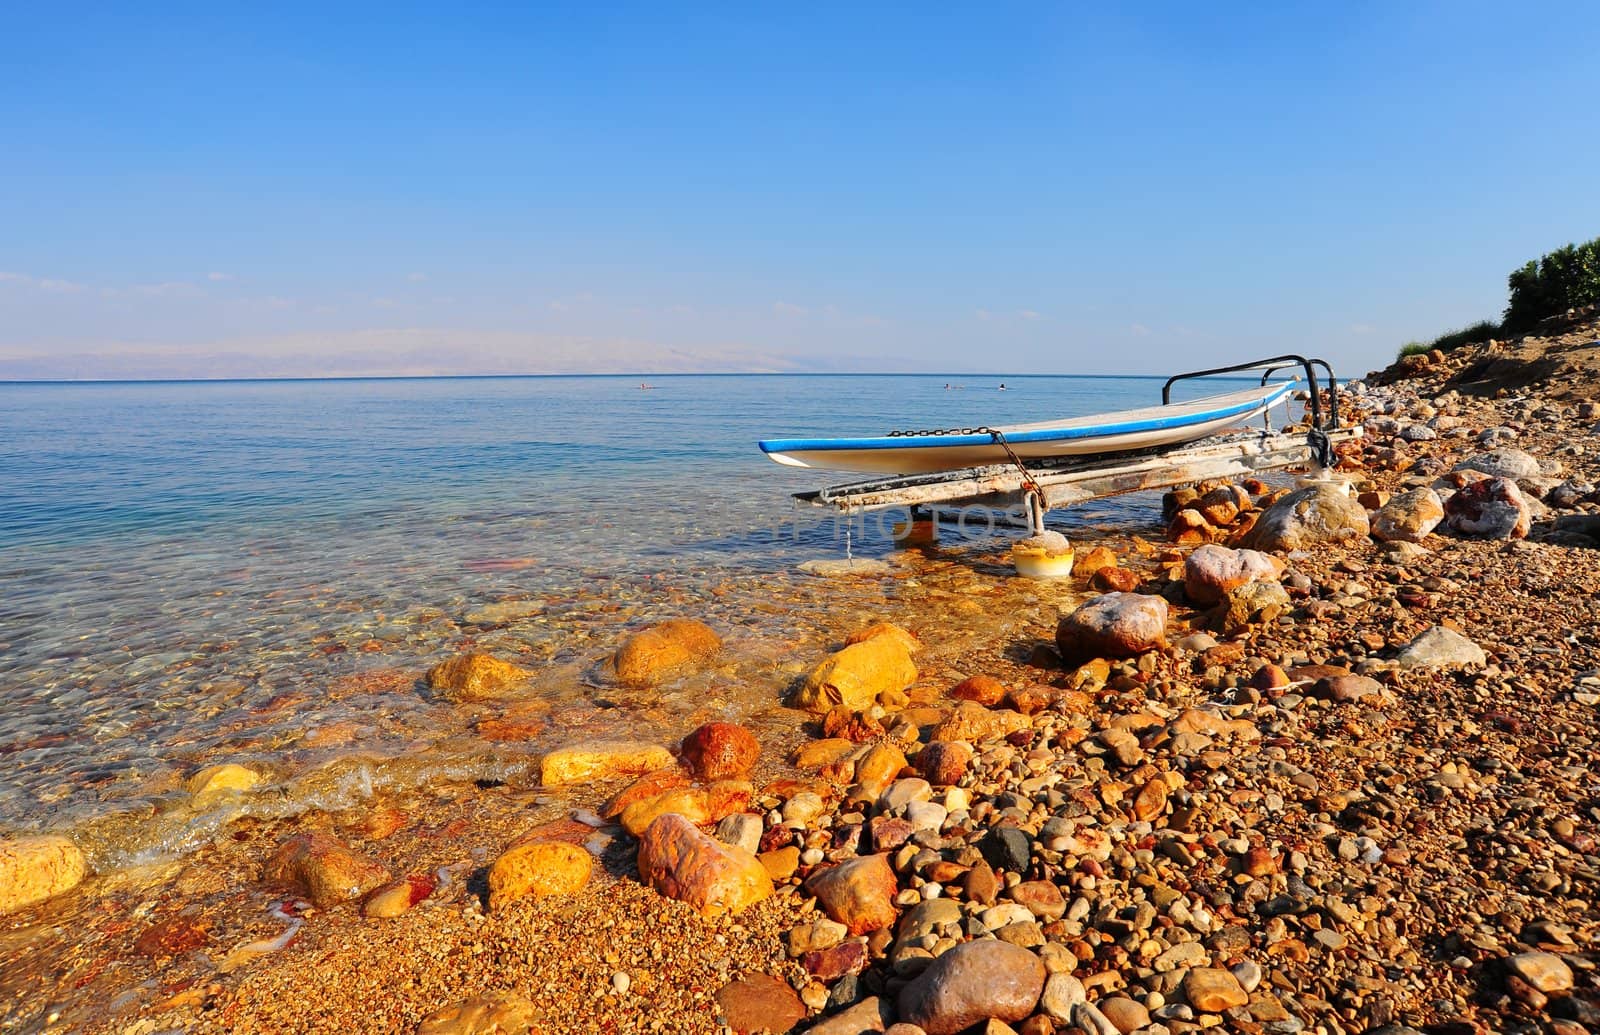  Dead Sea. by gkuna